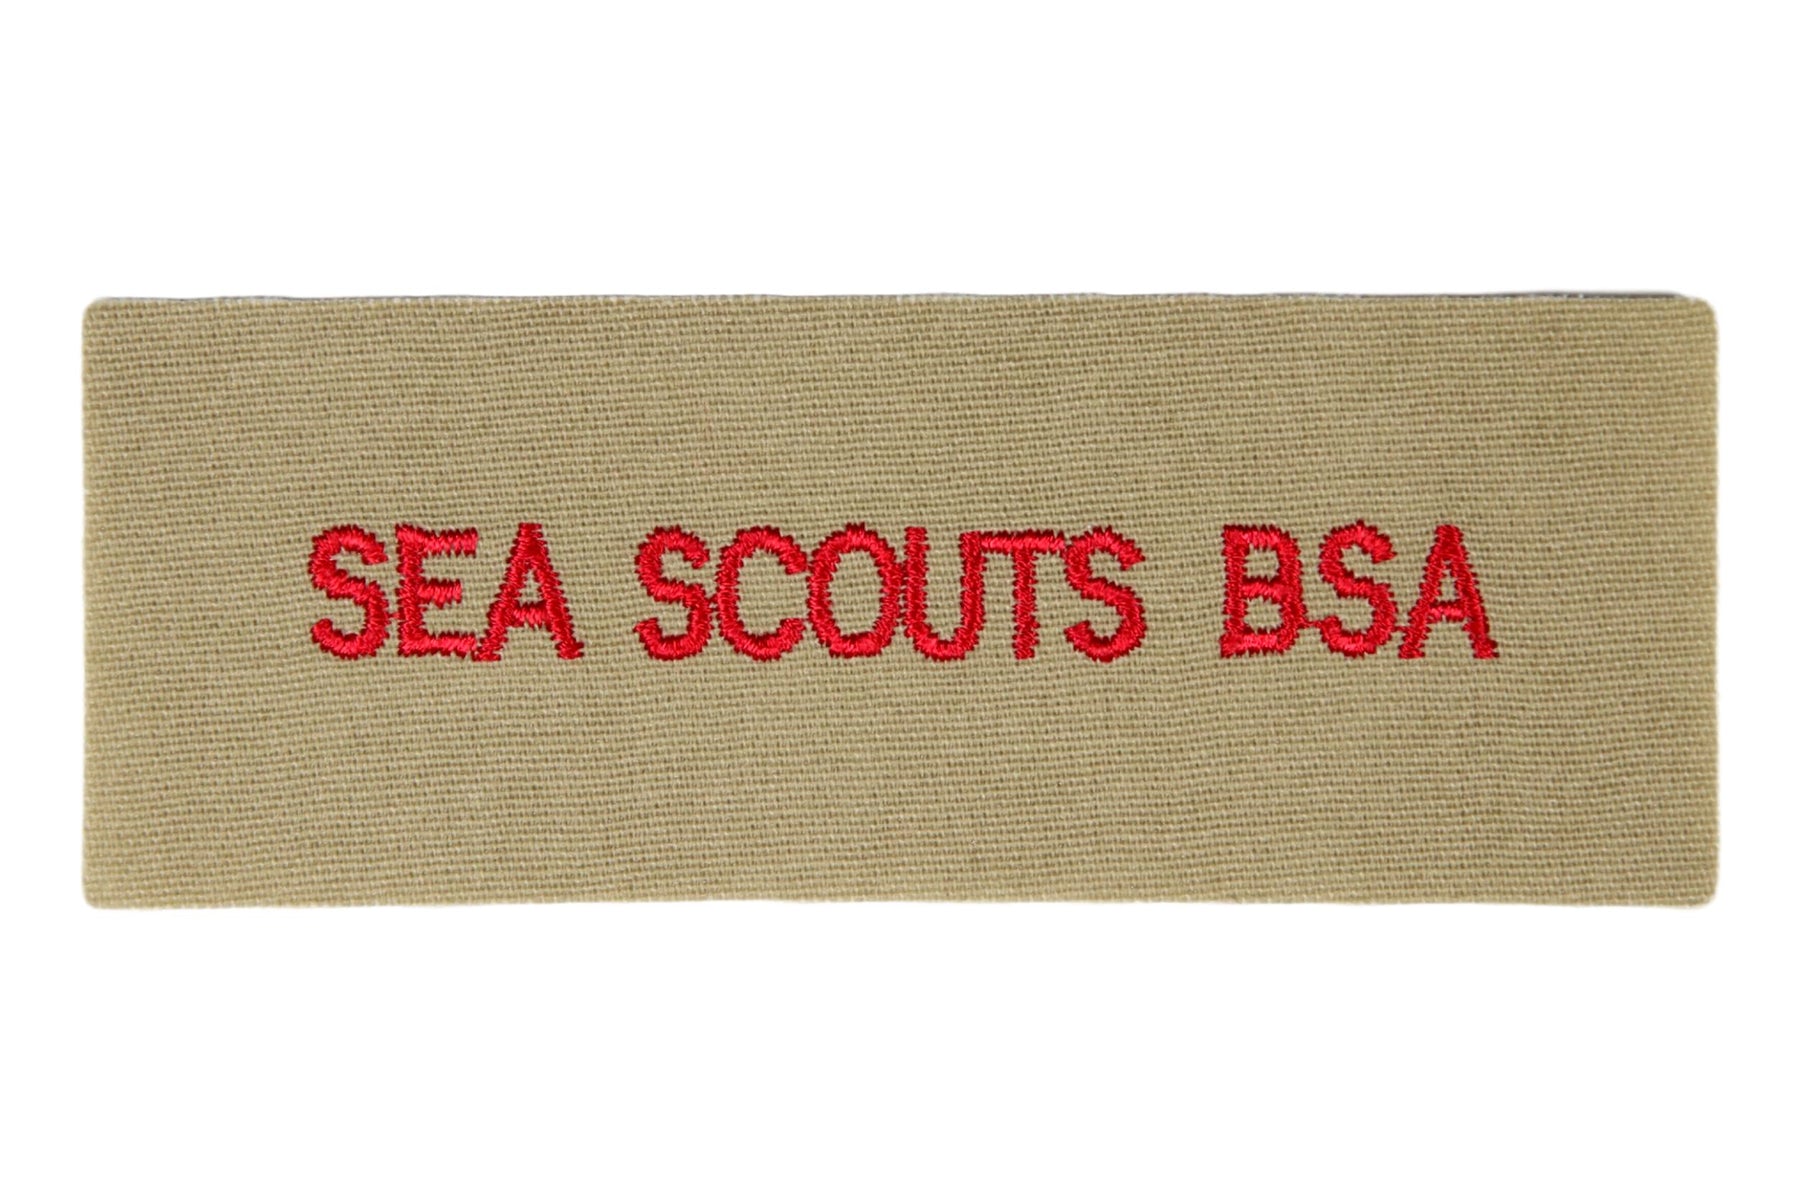 Sea Scouts B.S.A. Shirt Strip White on Tan